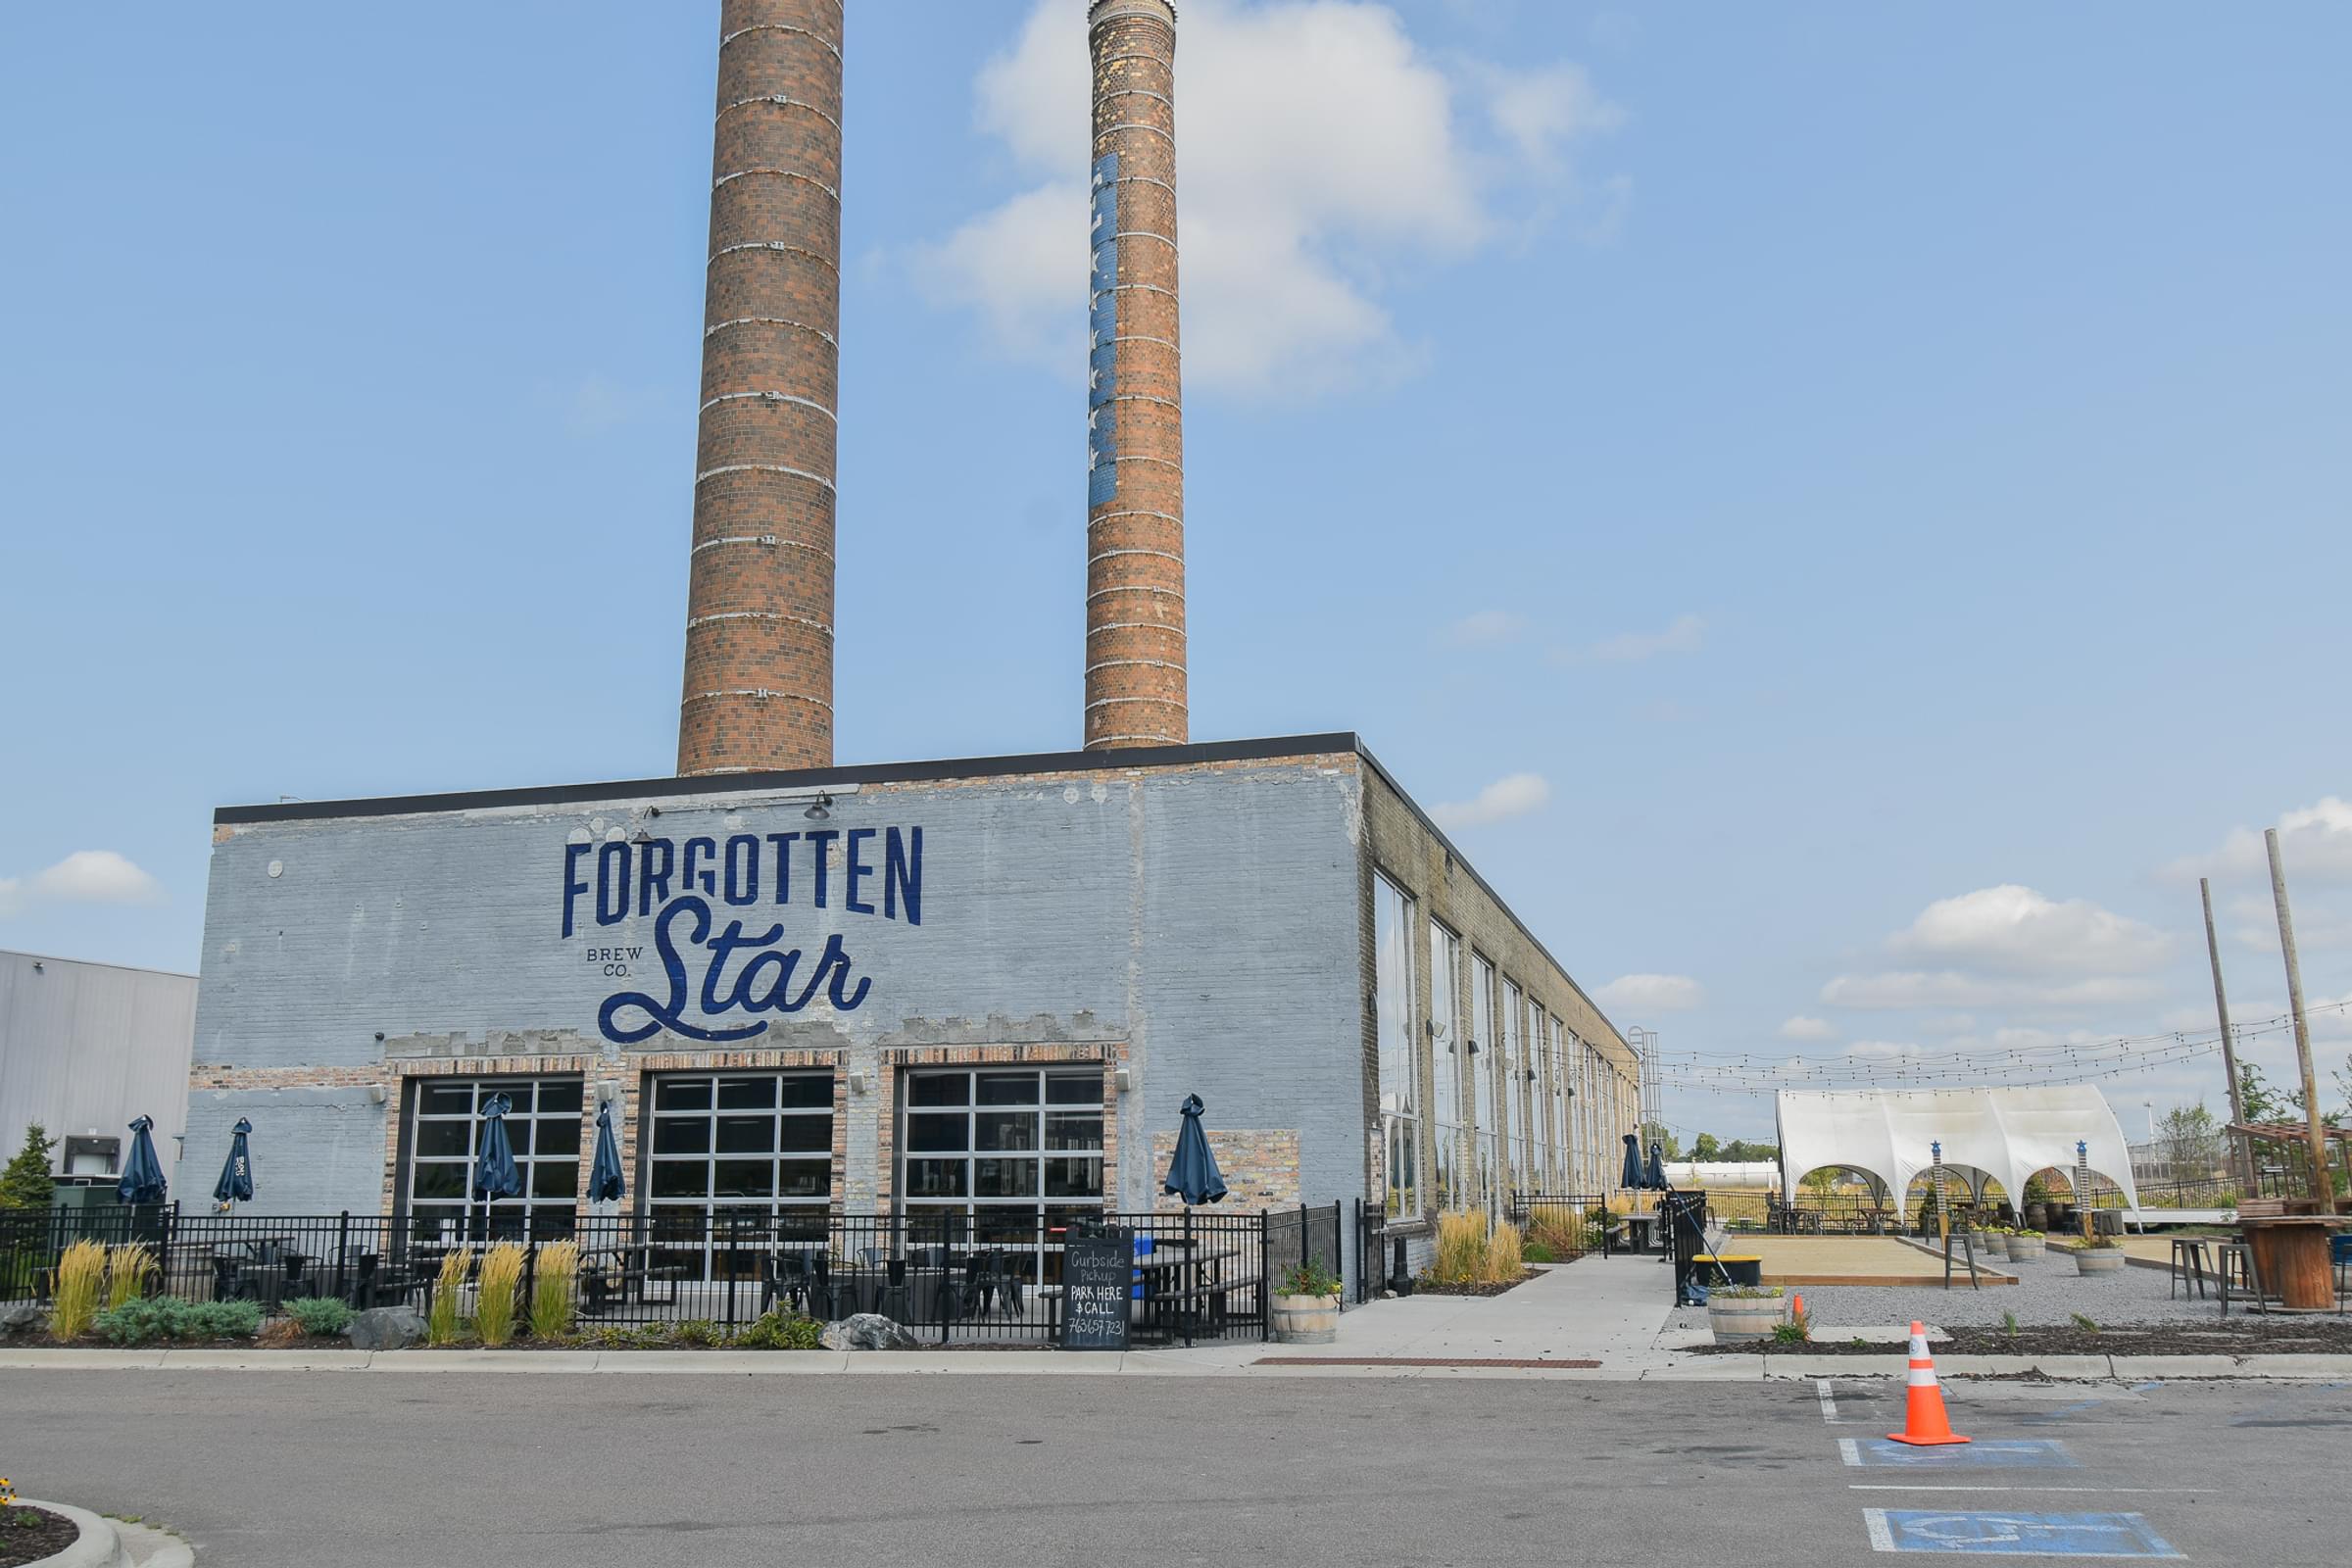 Forgotten Star BreweryVirtual Tour